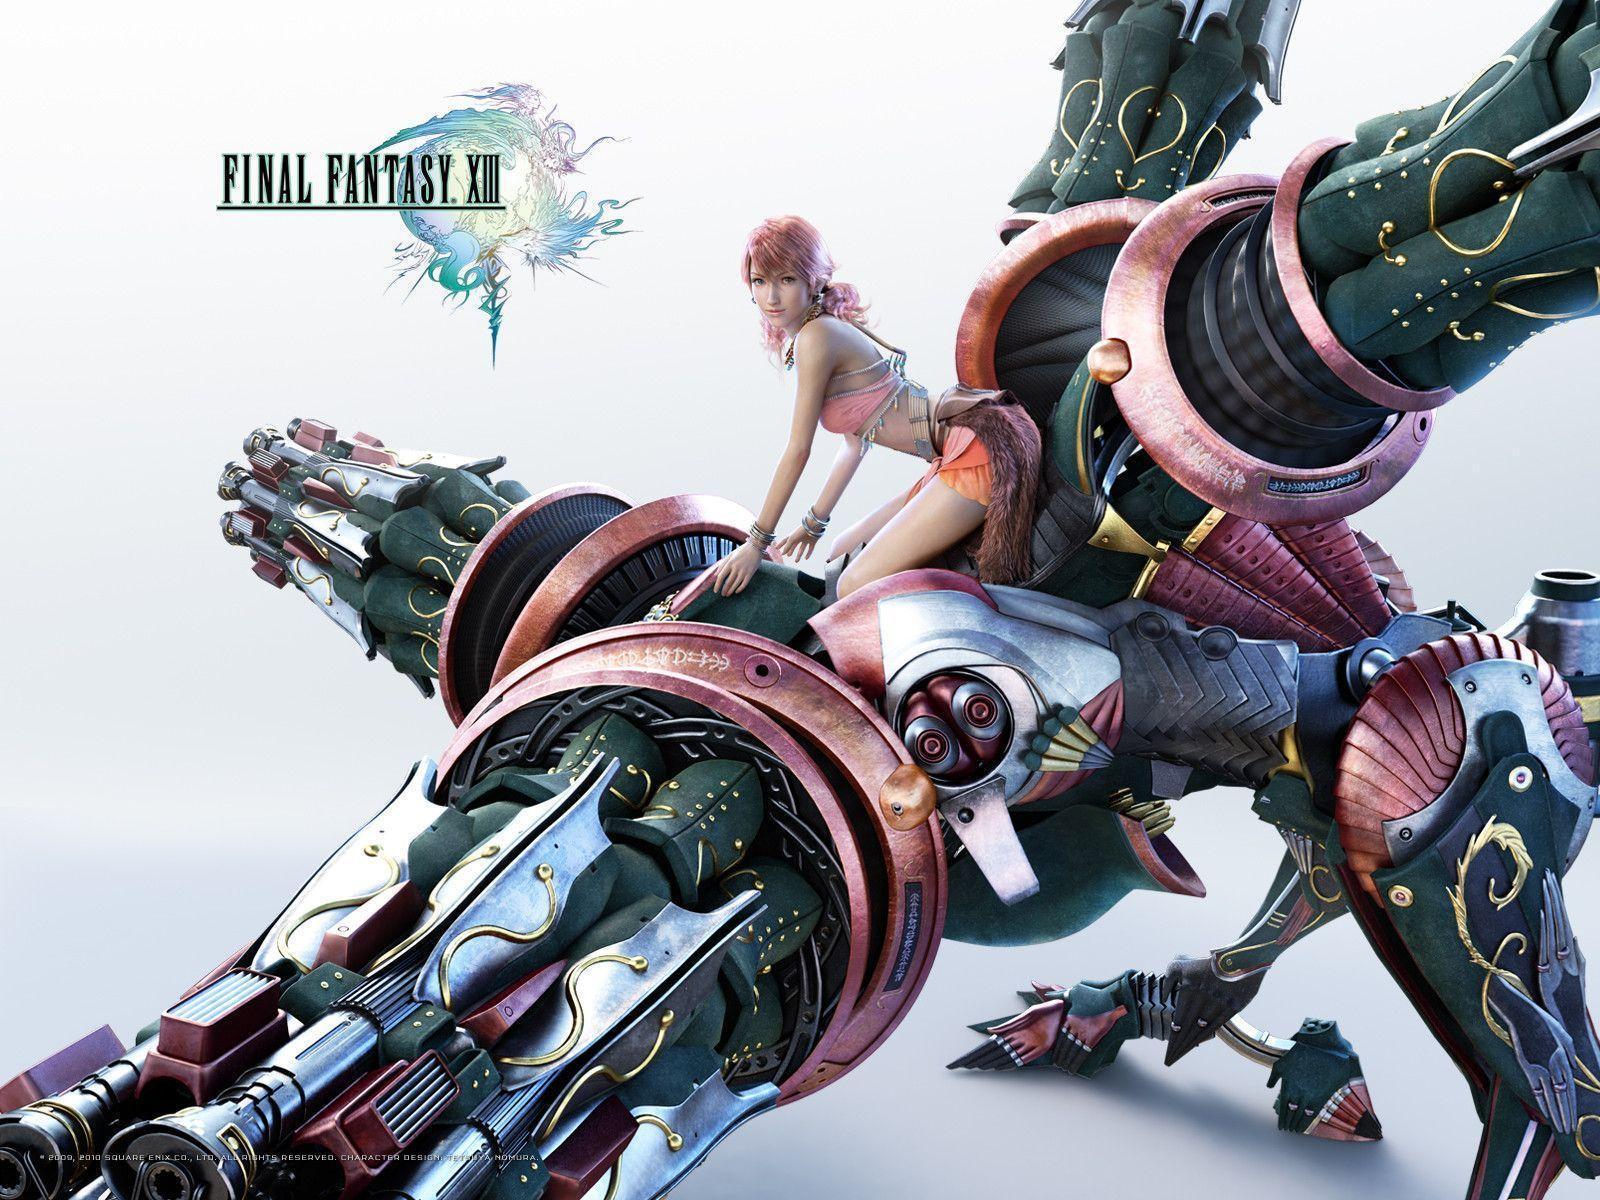 Final Fantasy XIII Wallpaper, Lightning, Serah, Sazh, Snow